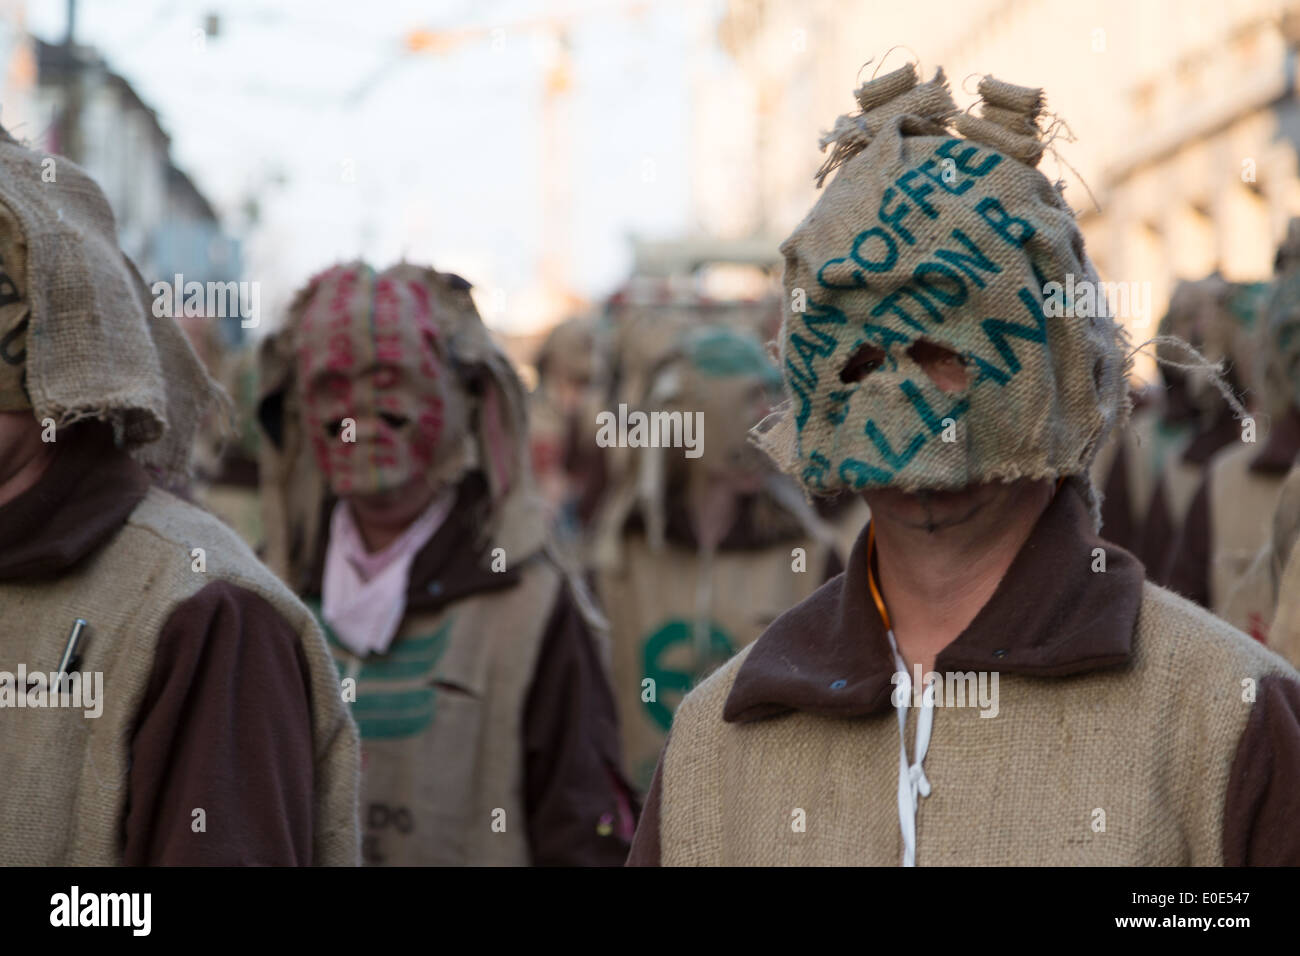 Une photographie de certains participants défilent habillés avec des sacs de jute couvrant leurs visages à un carnaval en Europe. Banque D'Images